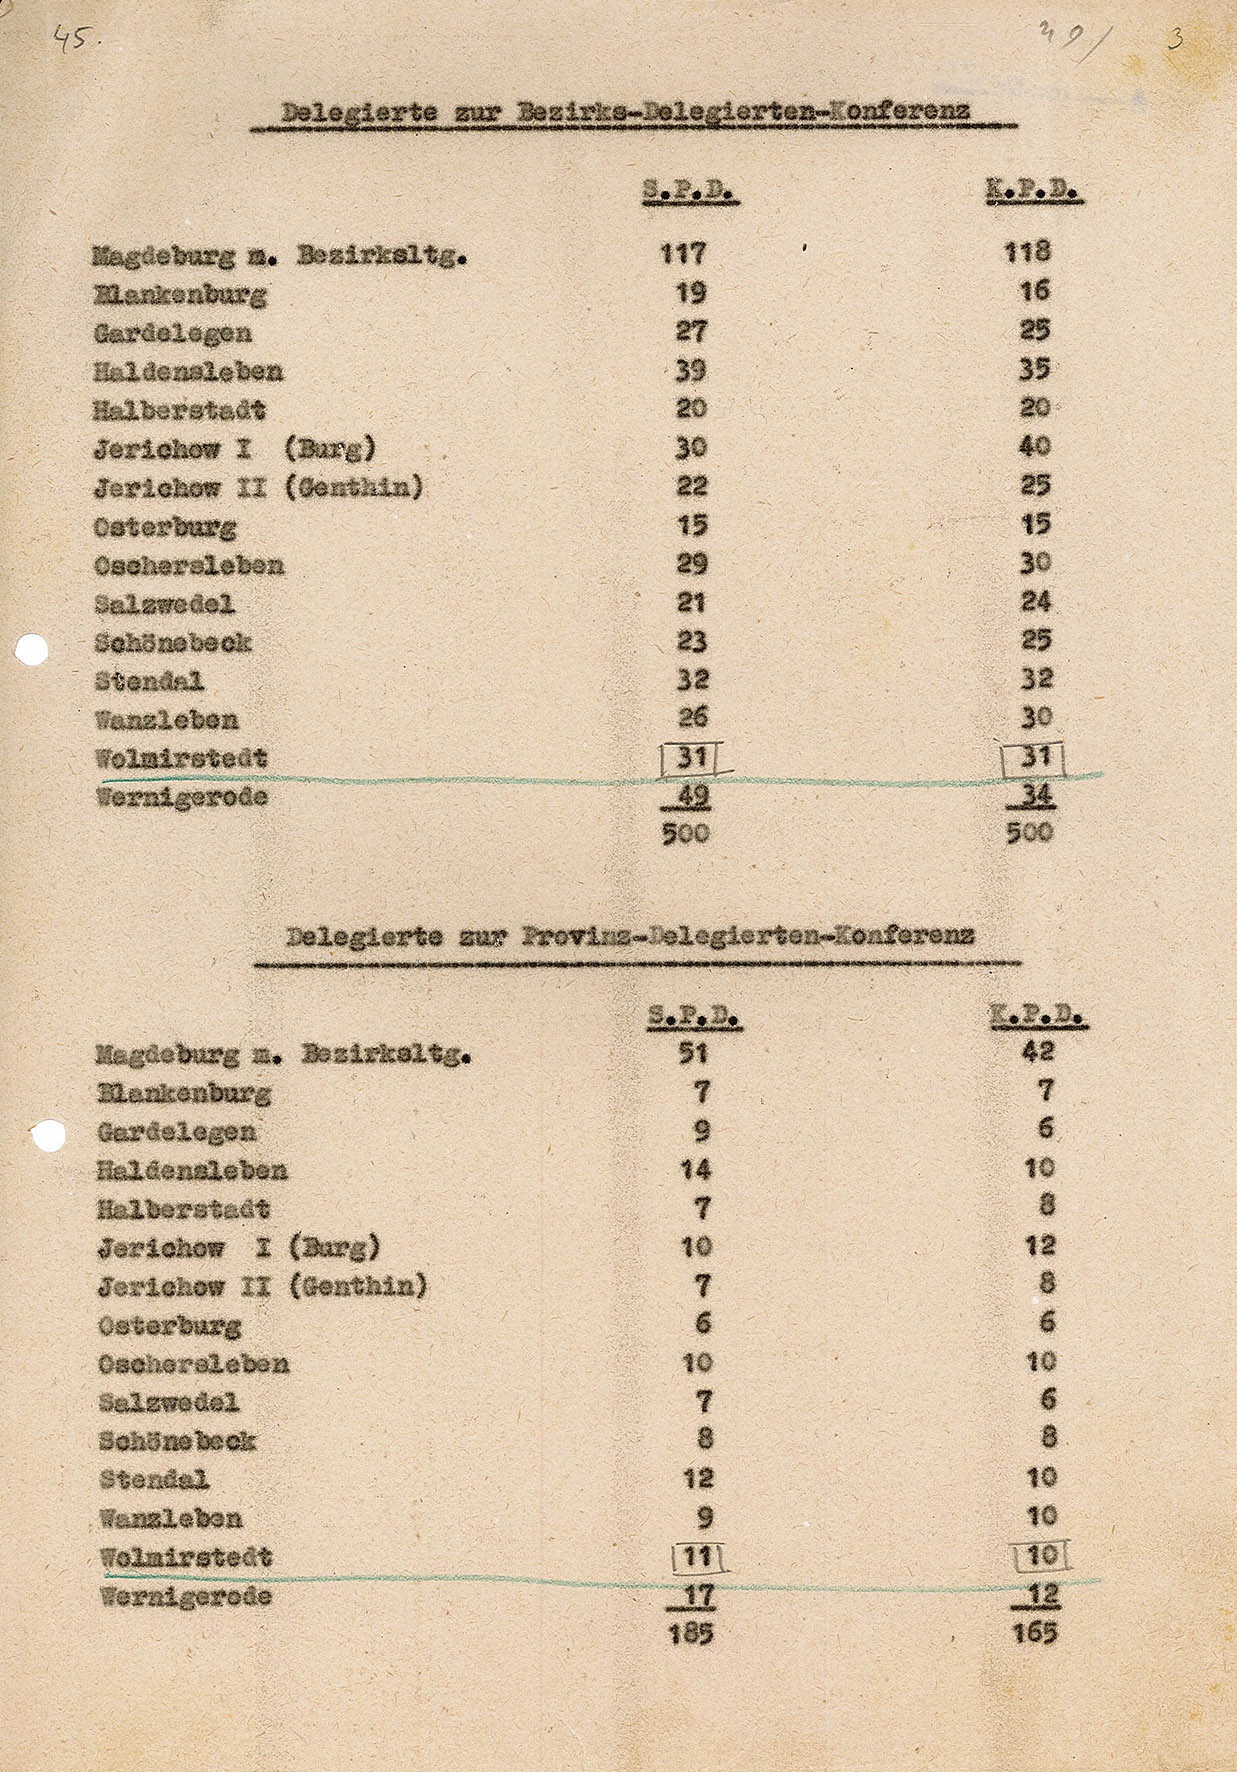 Liste der Delgierten zur Bezirks-Deligierten-Konferenz bzw. zur Provinz-Delegierten-Konferenz, 1946 (Museum Wolmirstedt RR-F)